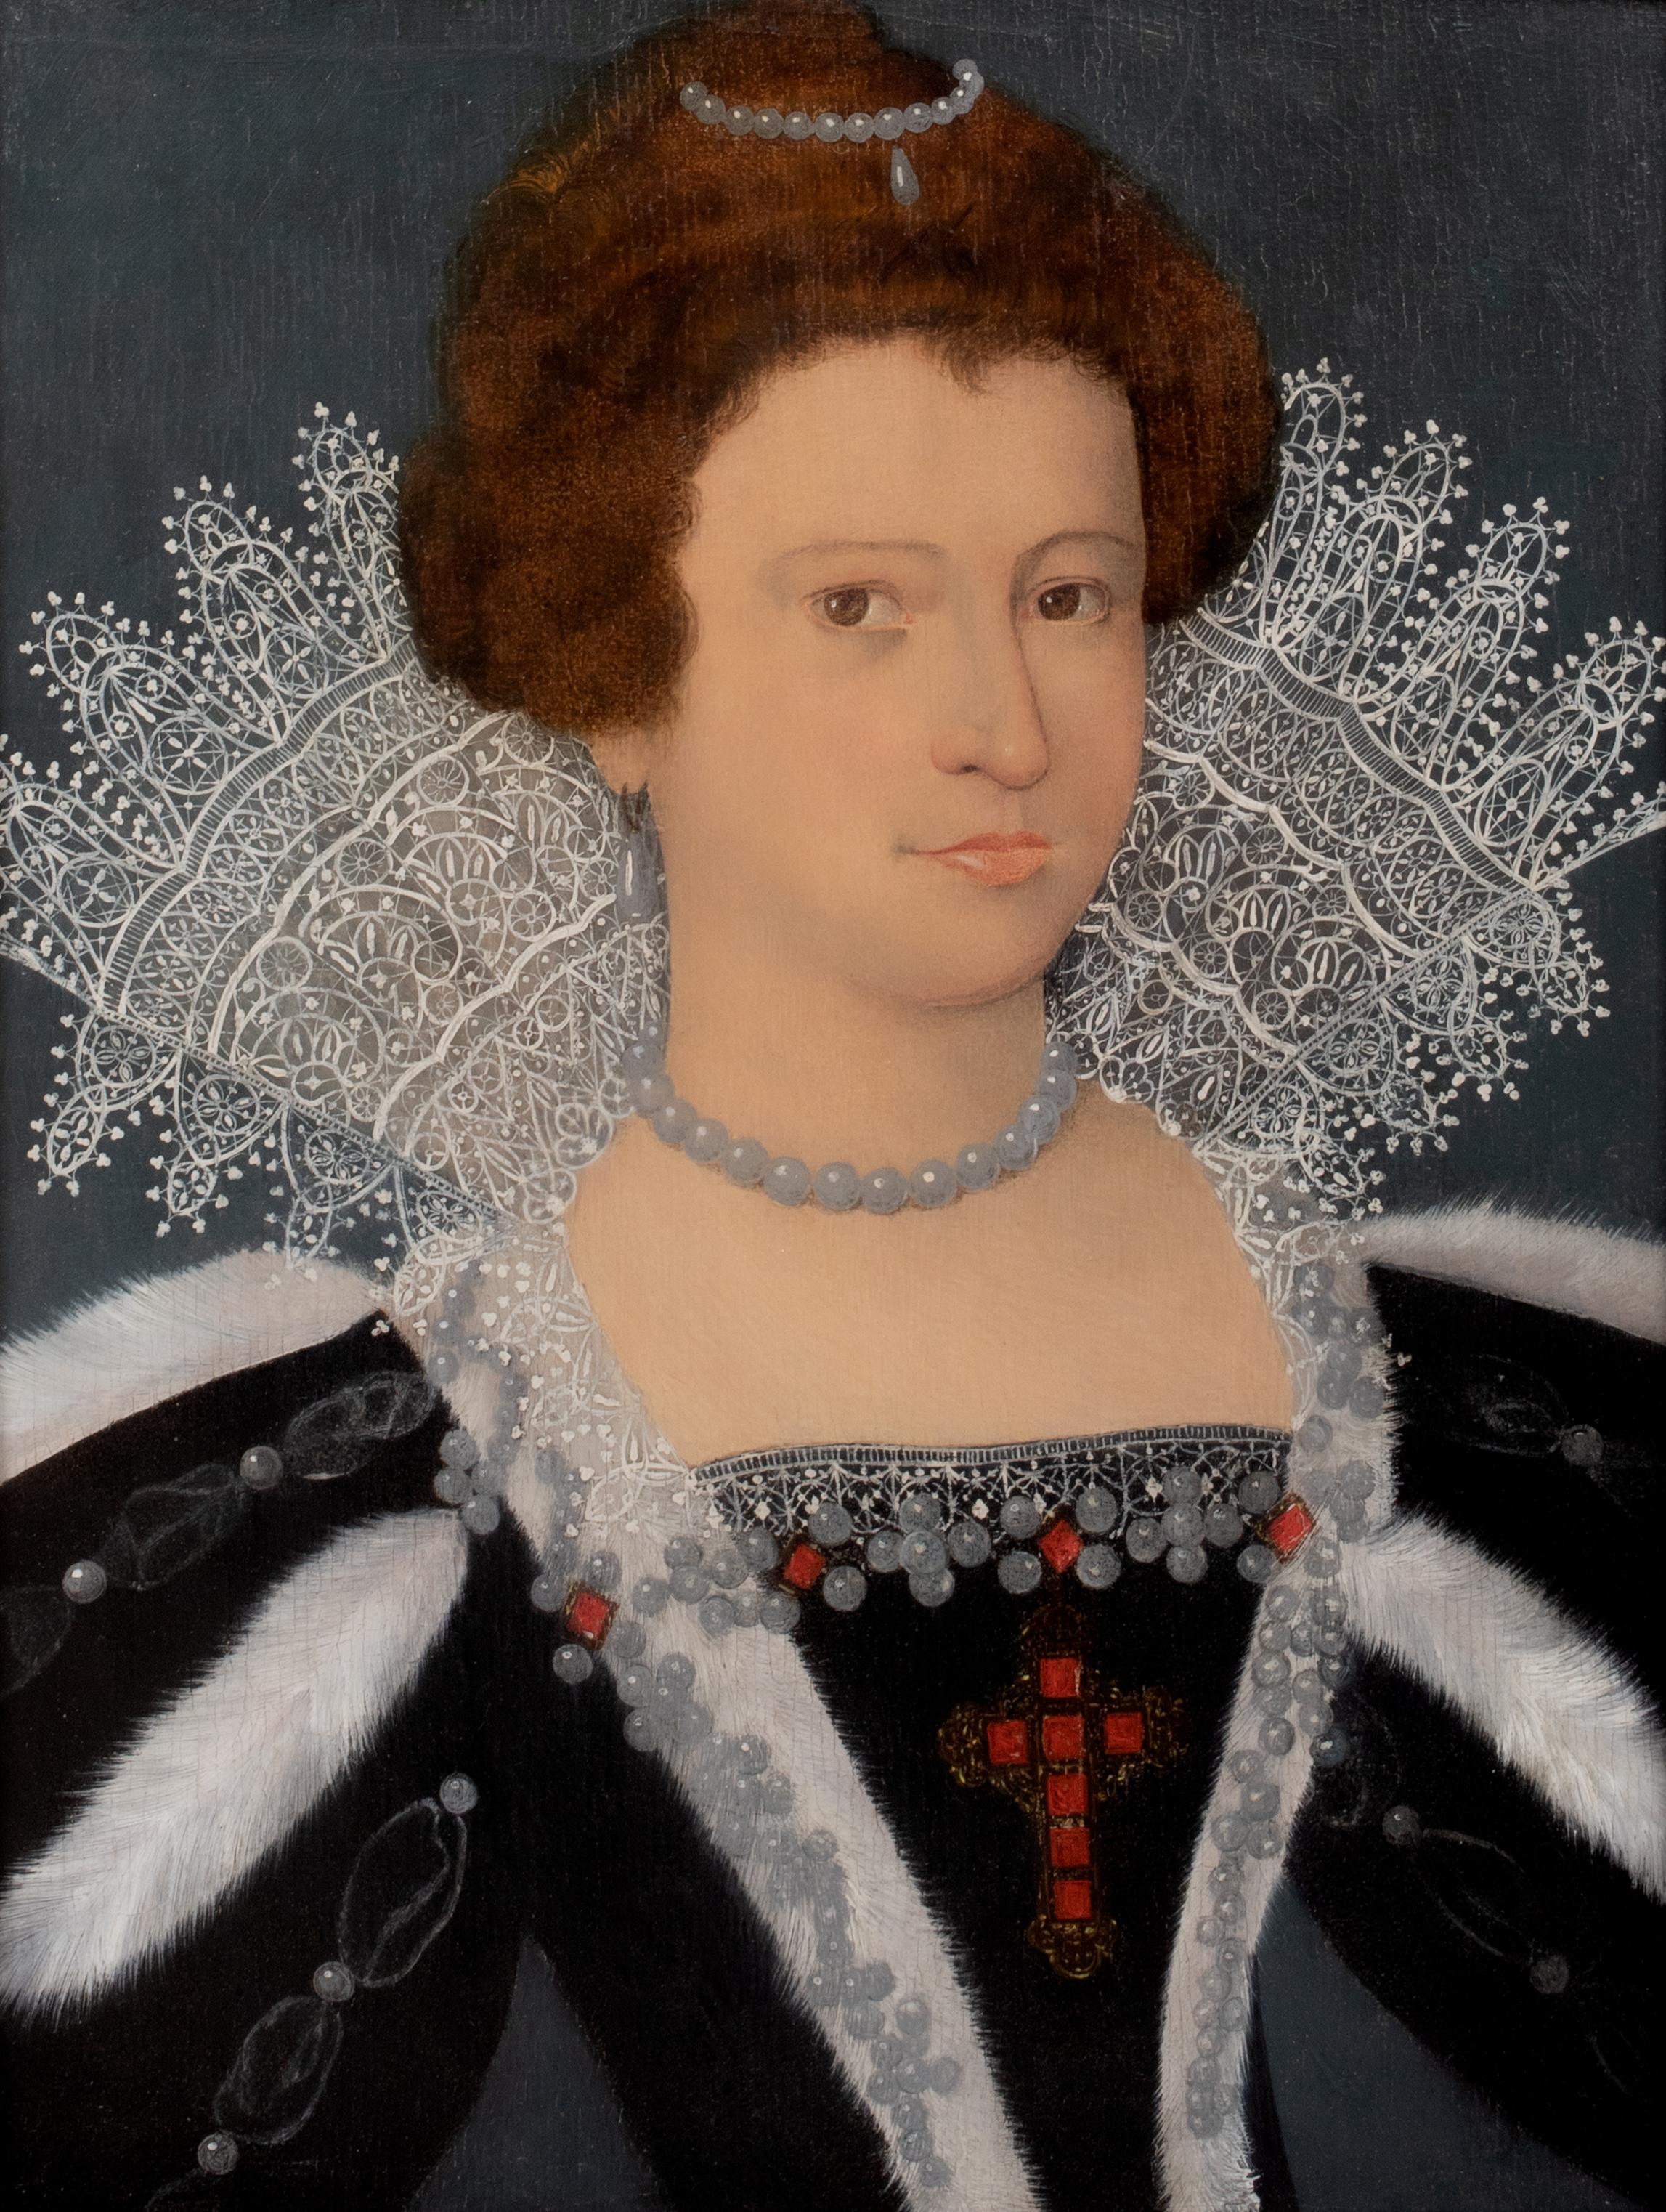 16th century queen elizabeth